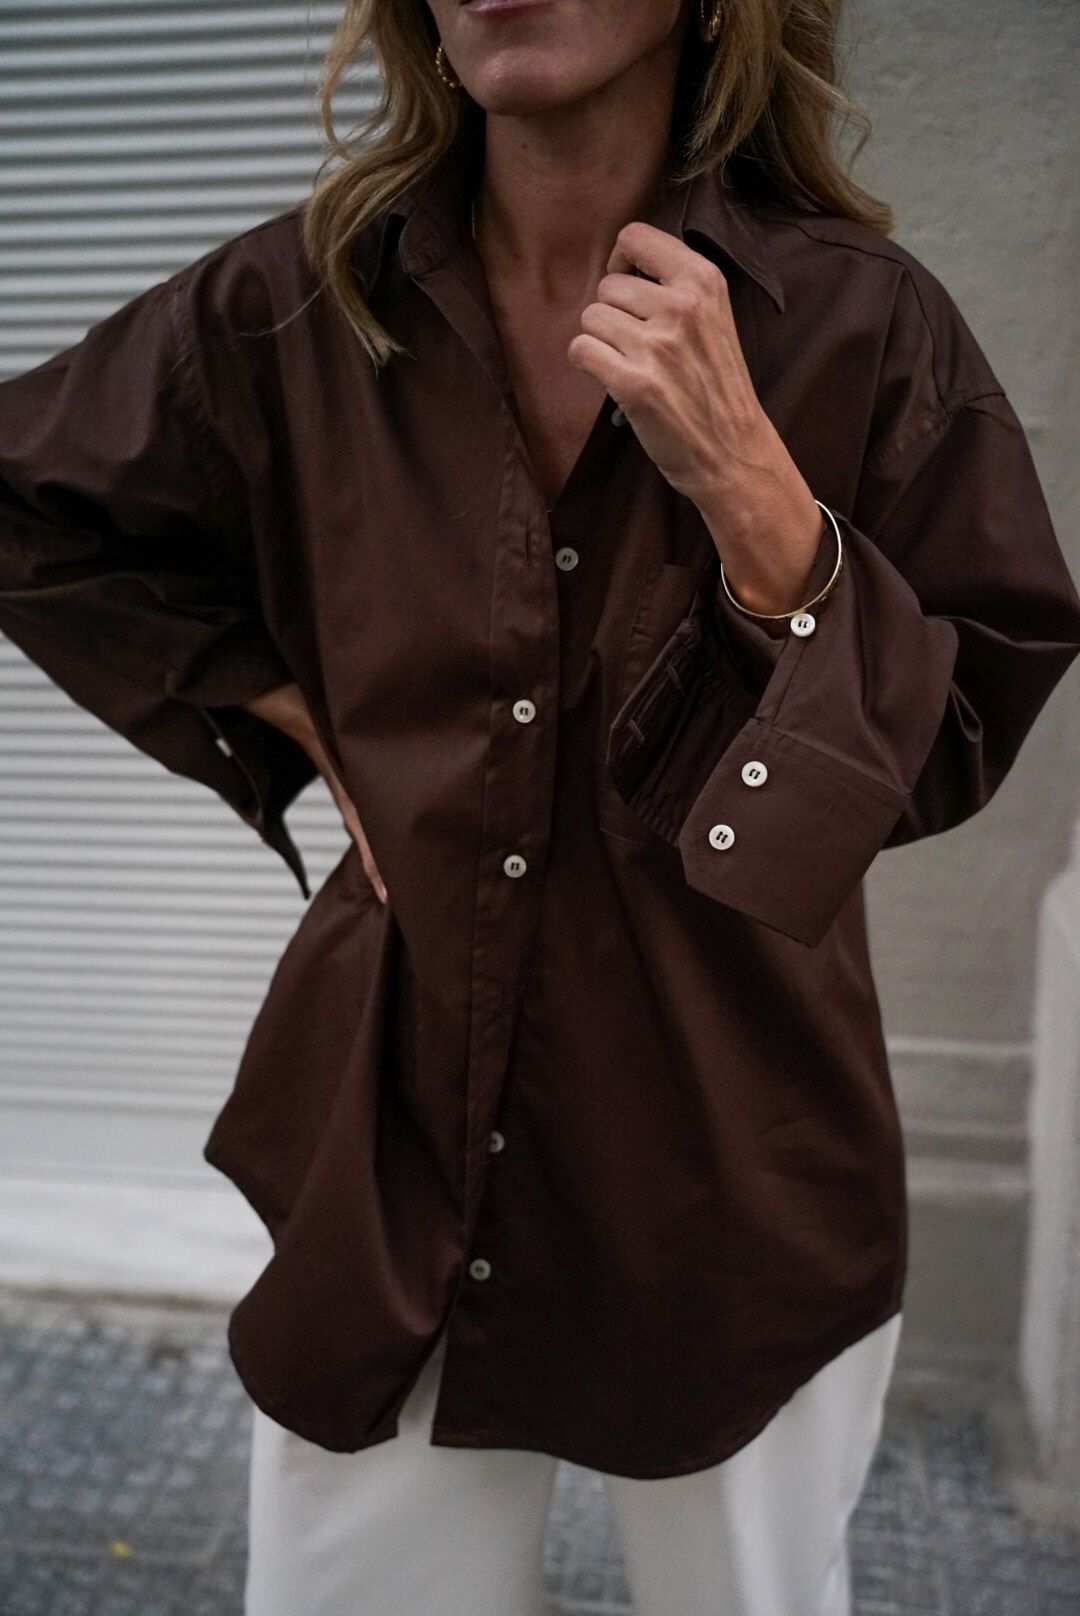 πουκάμισο καφέ σοκολατί ανδρικό ύφος φαρδύ ποπλίνα ένδυση γραφείου καθημερινό άνετο τσέπη κλασικό